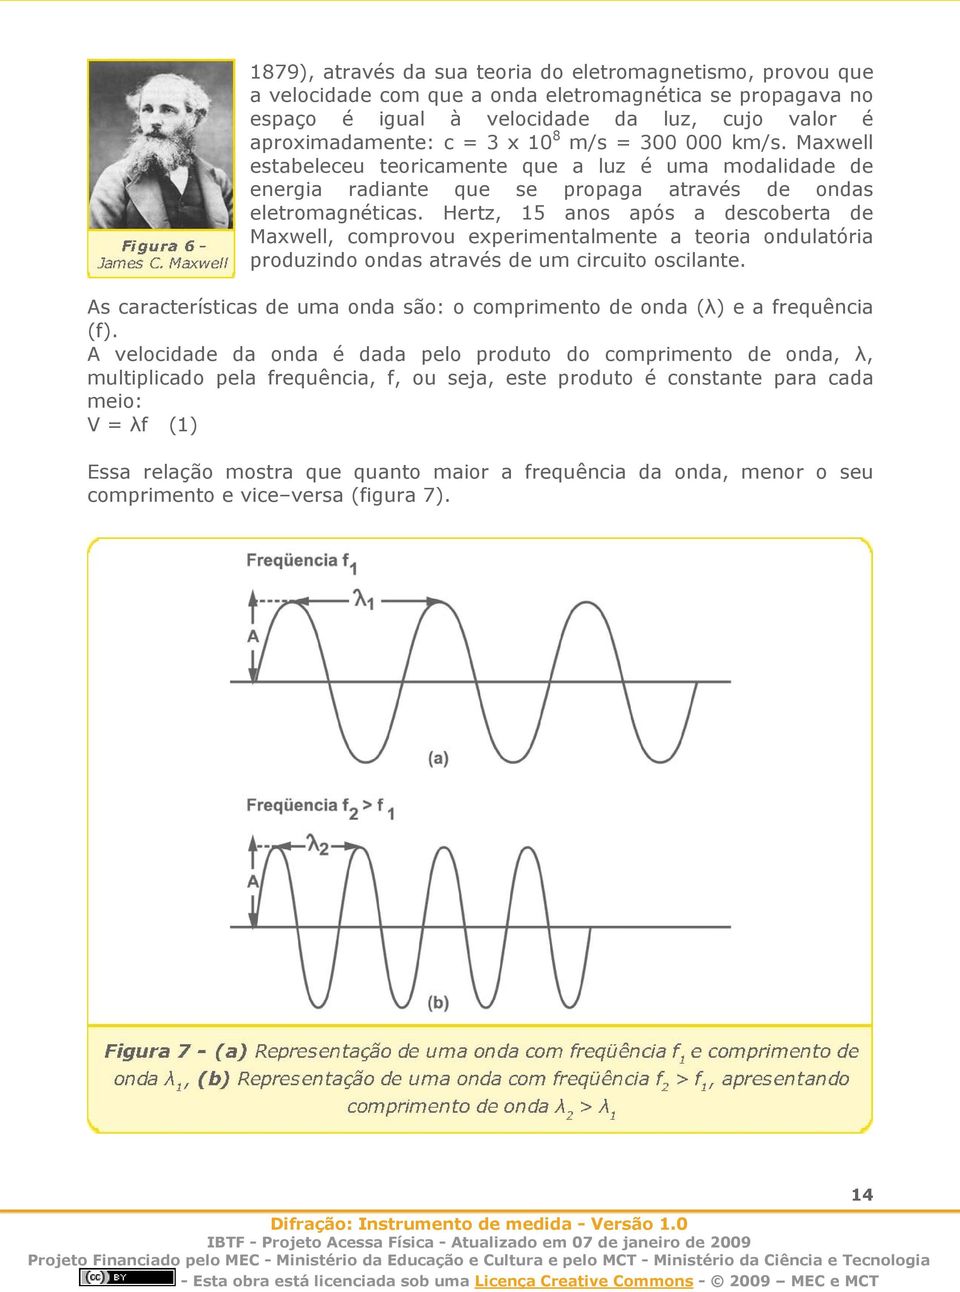 Hertz, 15 anos após a descoberta de Maxwell, comprovou experimentalmente a teoria ondulatória produzindo ondas através de um circuito oscilante.